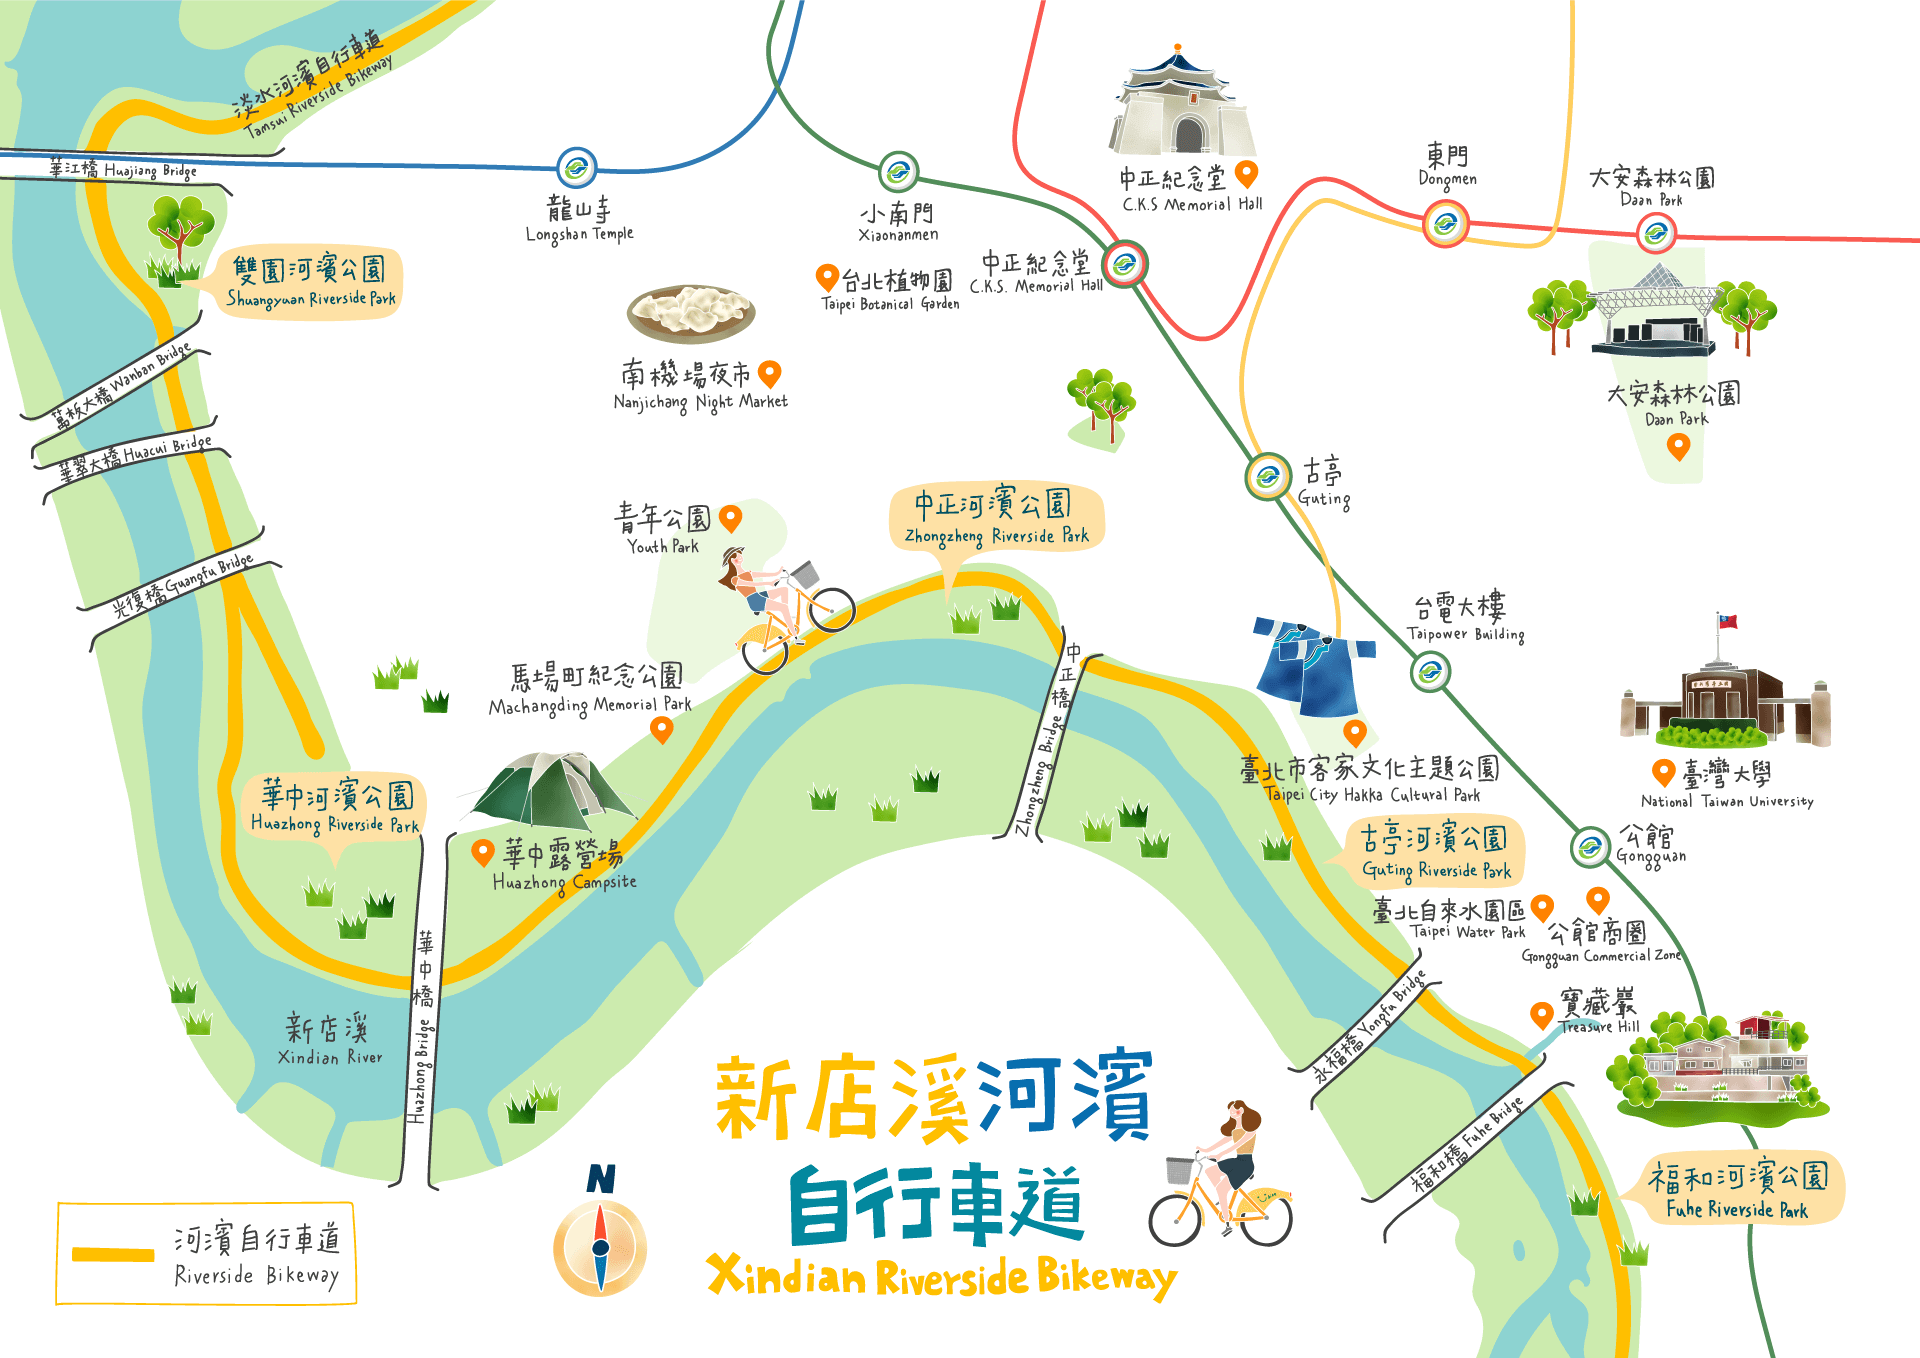 新店溪河濱自行車道路線圖